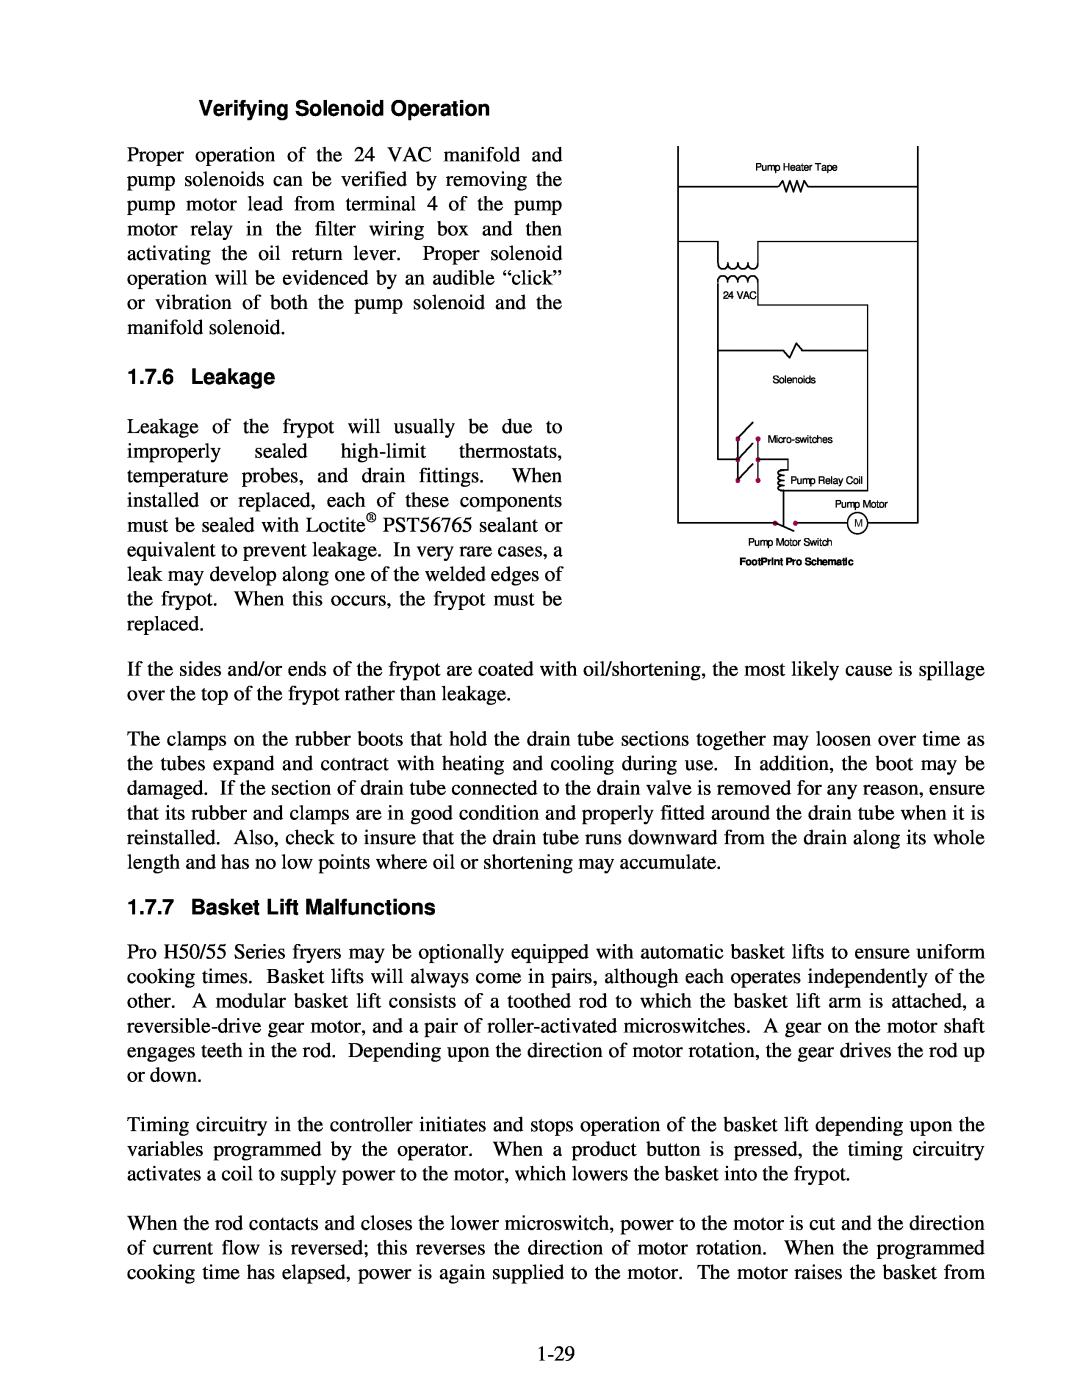 Frymaster H50 manual Verifying Solenoid Operation, Leakage, Basket Lift Malfunctions 